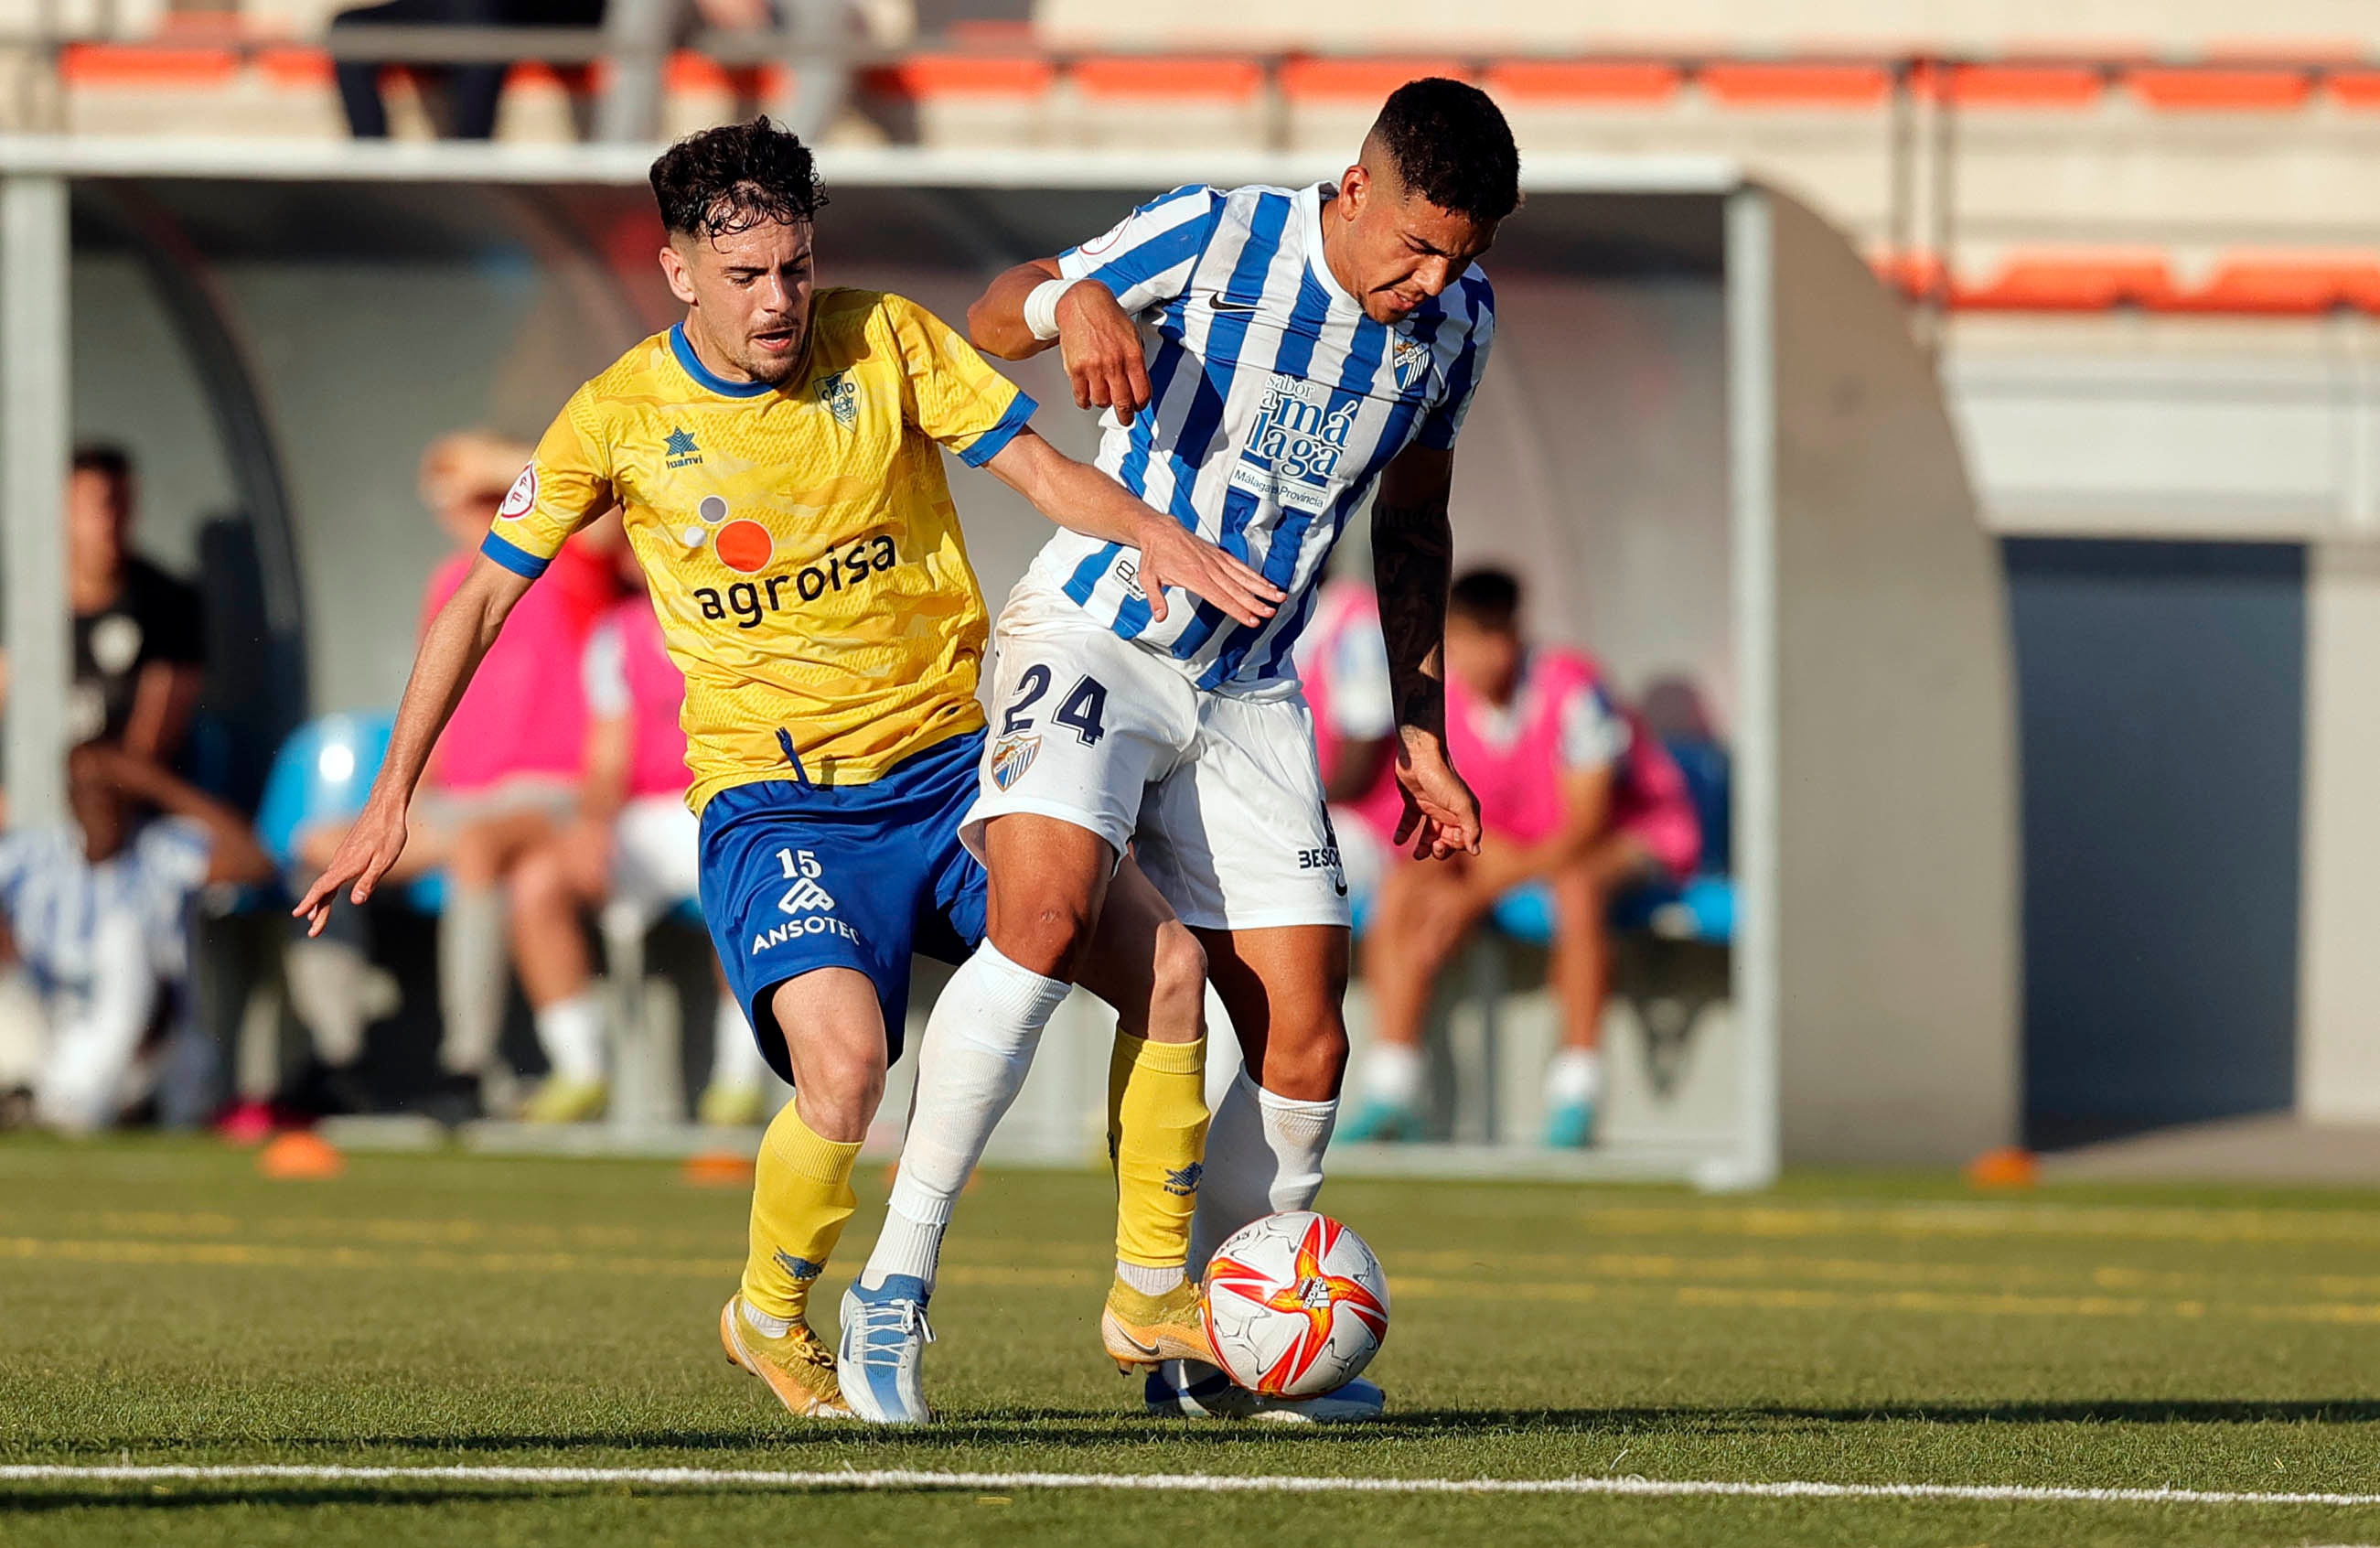 Loren Zúñiga, en el partido con el Atlético Malagueño contra el Huétor Tájar. MálagaCF